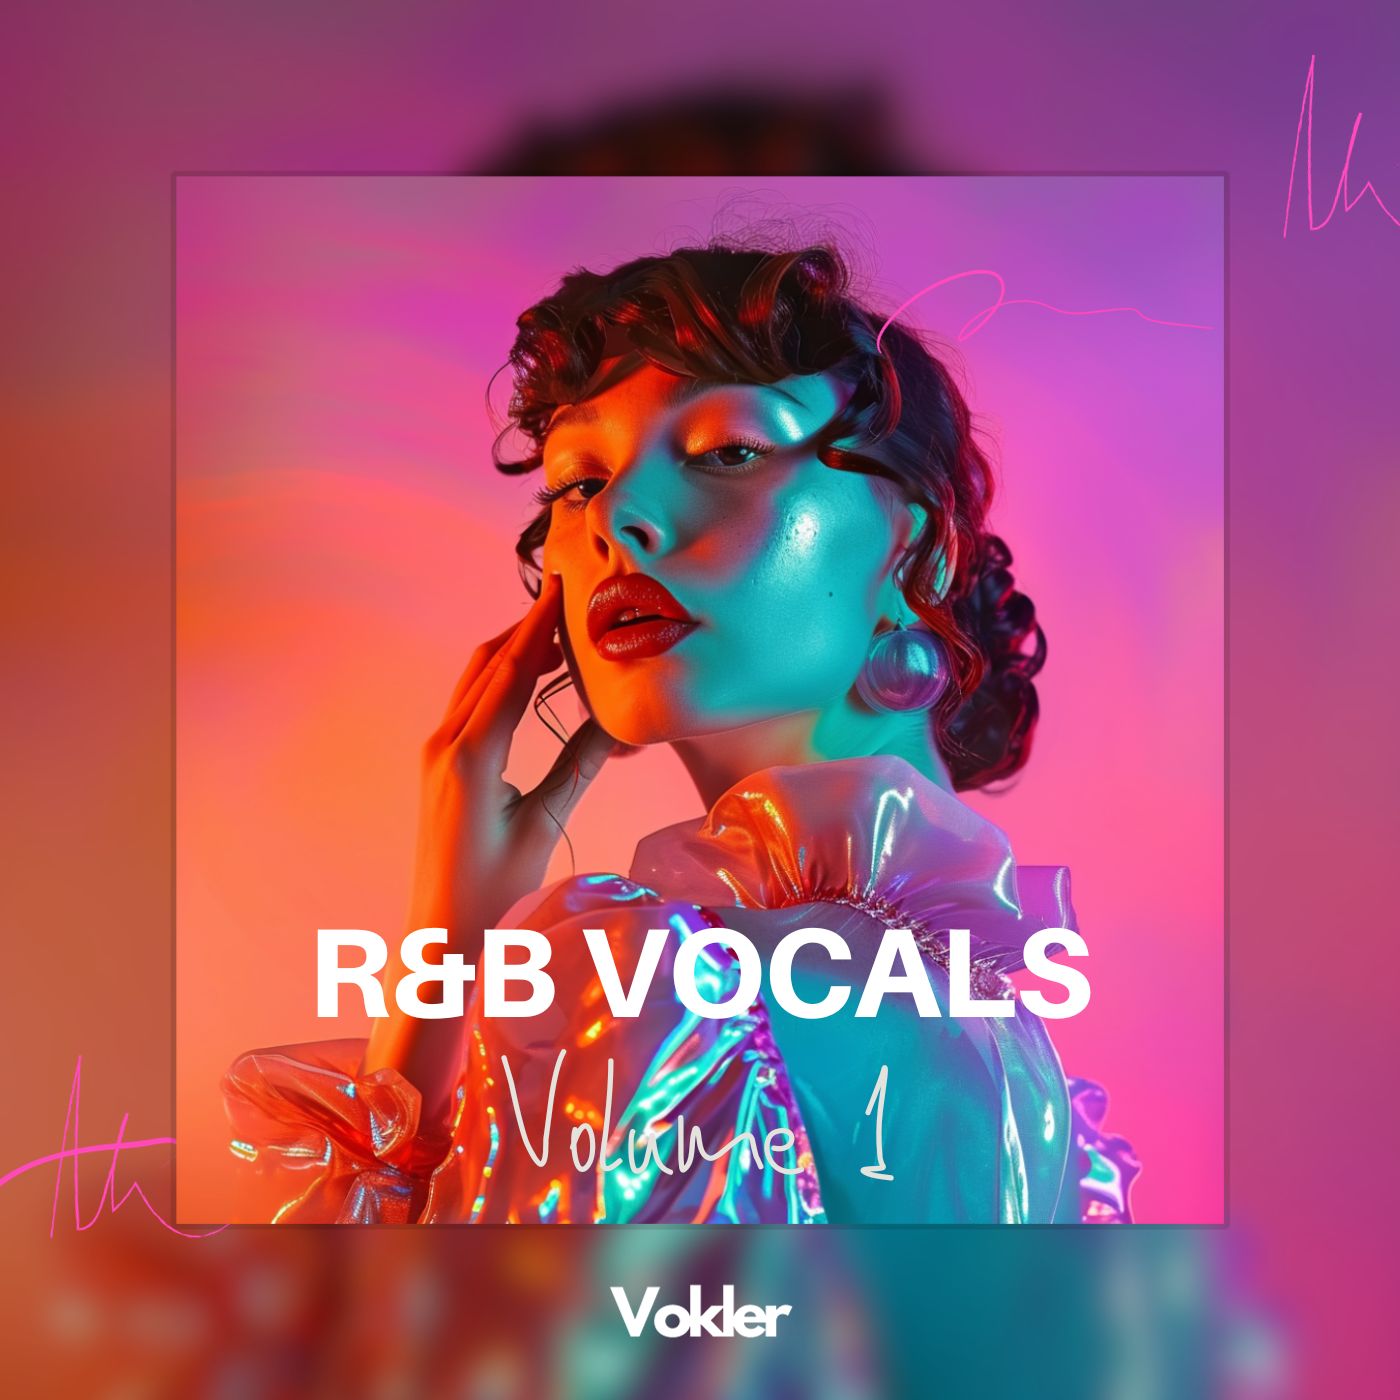 RnB Vocals Vol. 1